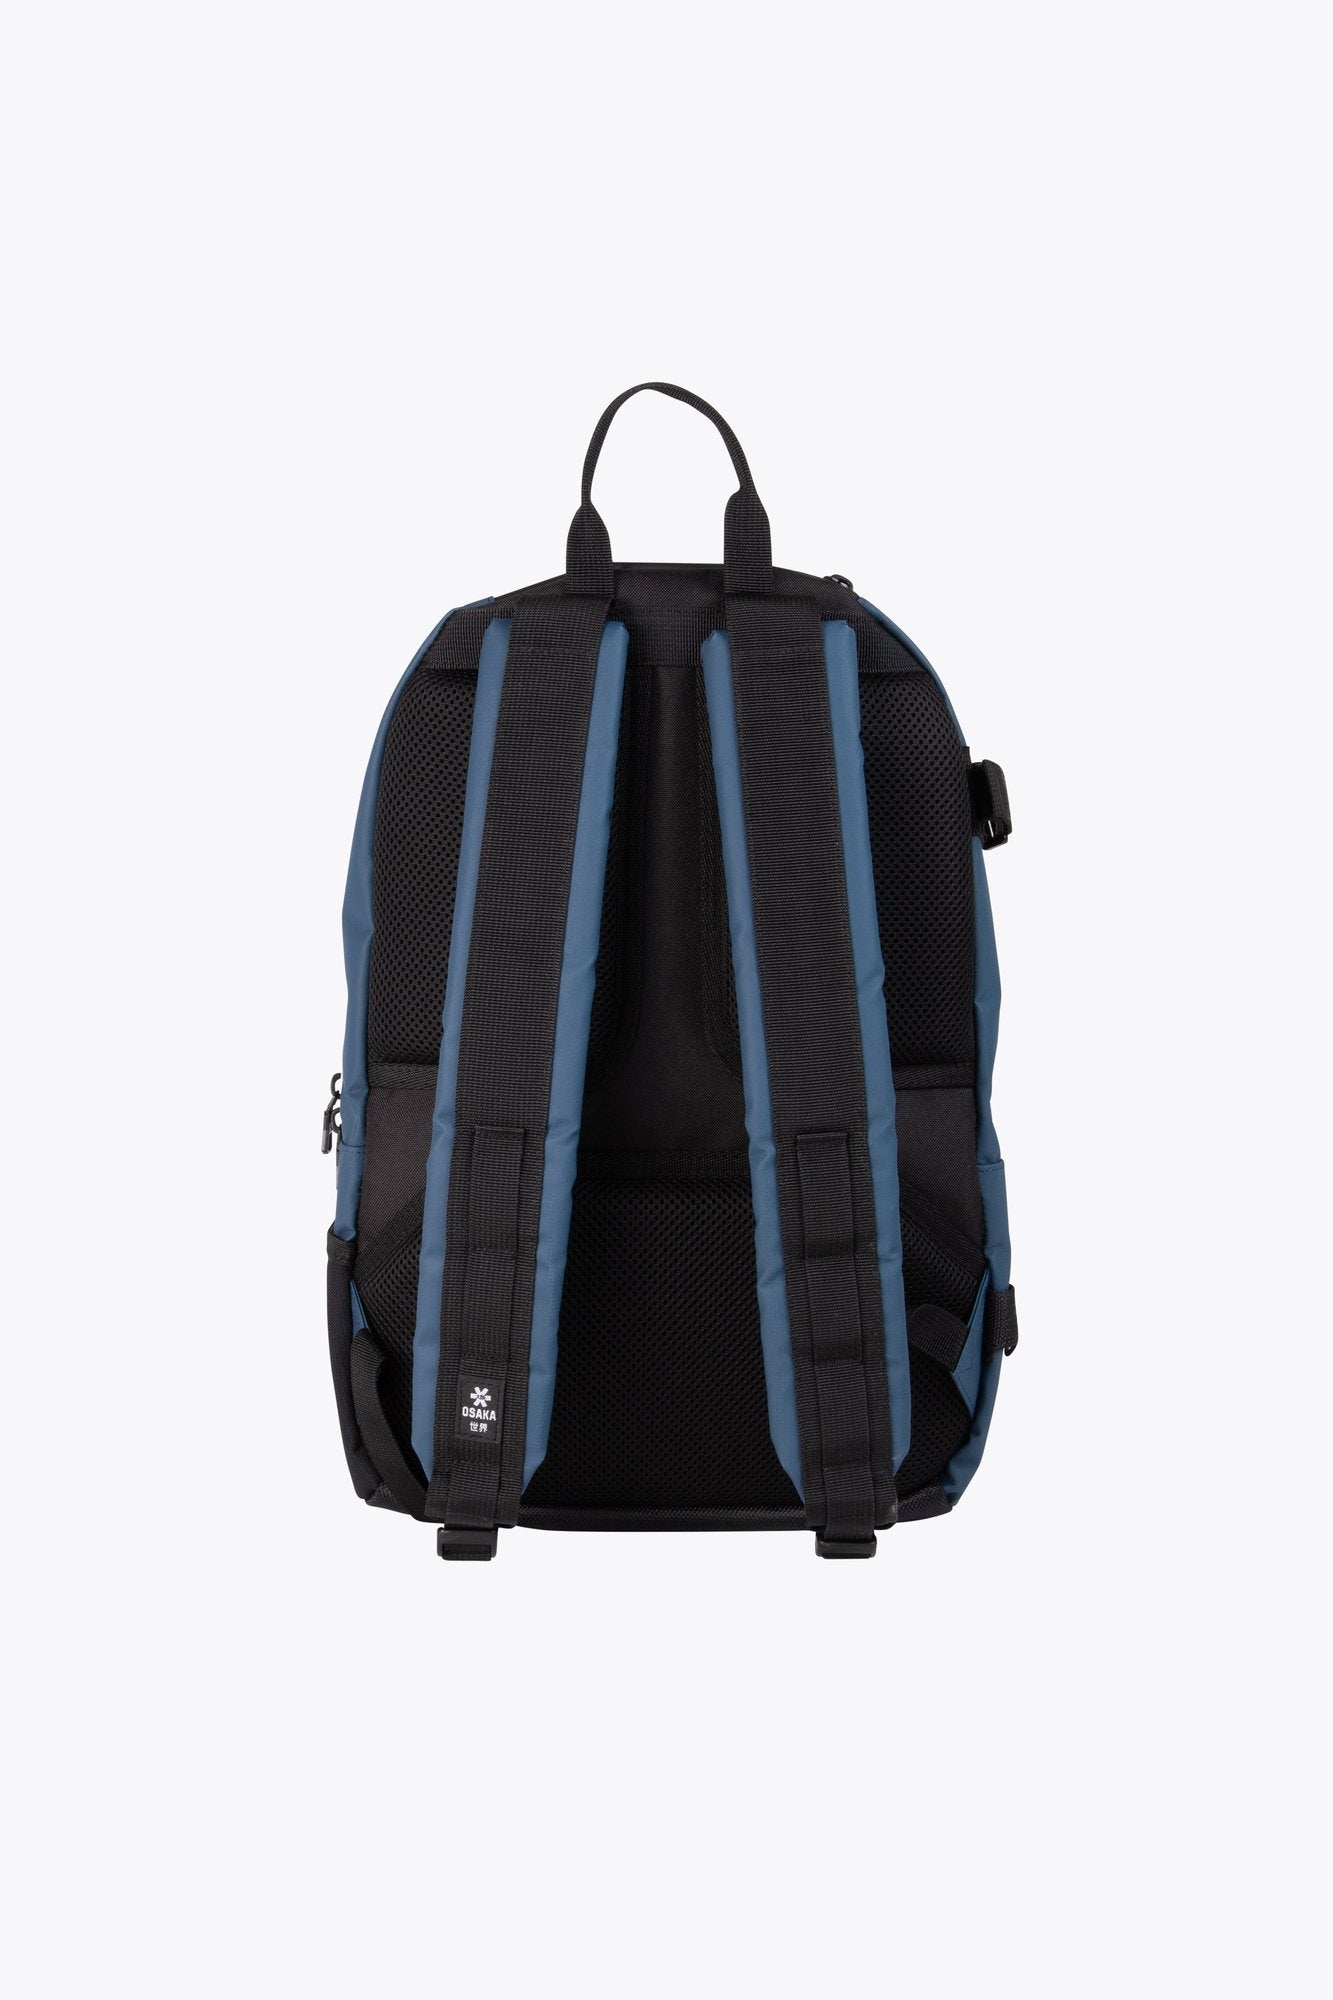 Osaka Pro Tour Medium Backpack